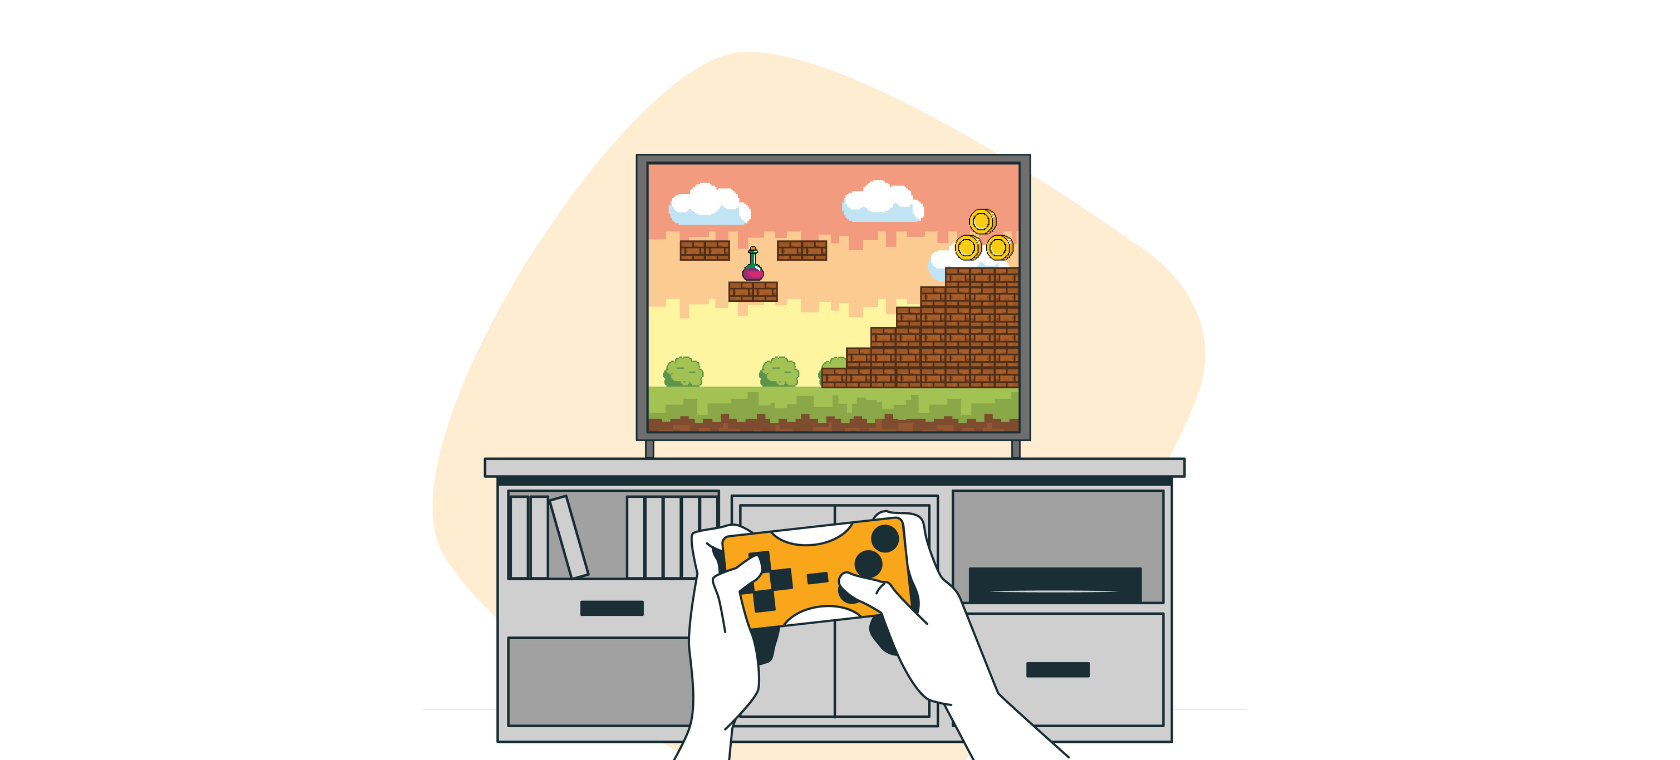 Ilutracija prikazuje narančastu igraču konzolu za video igre.